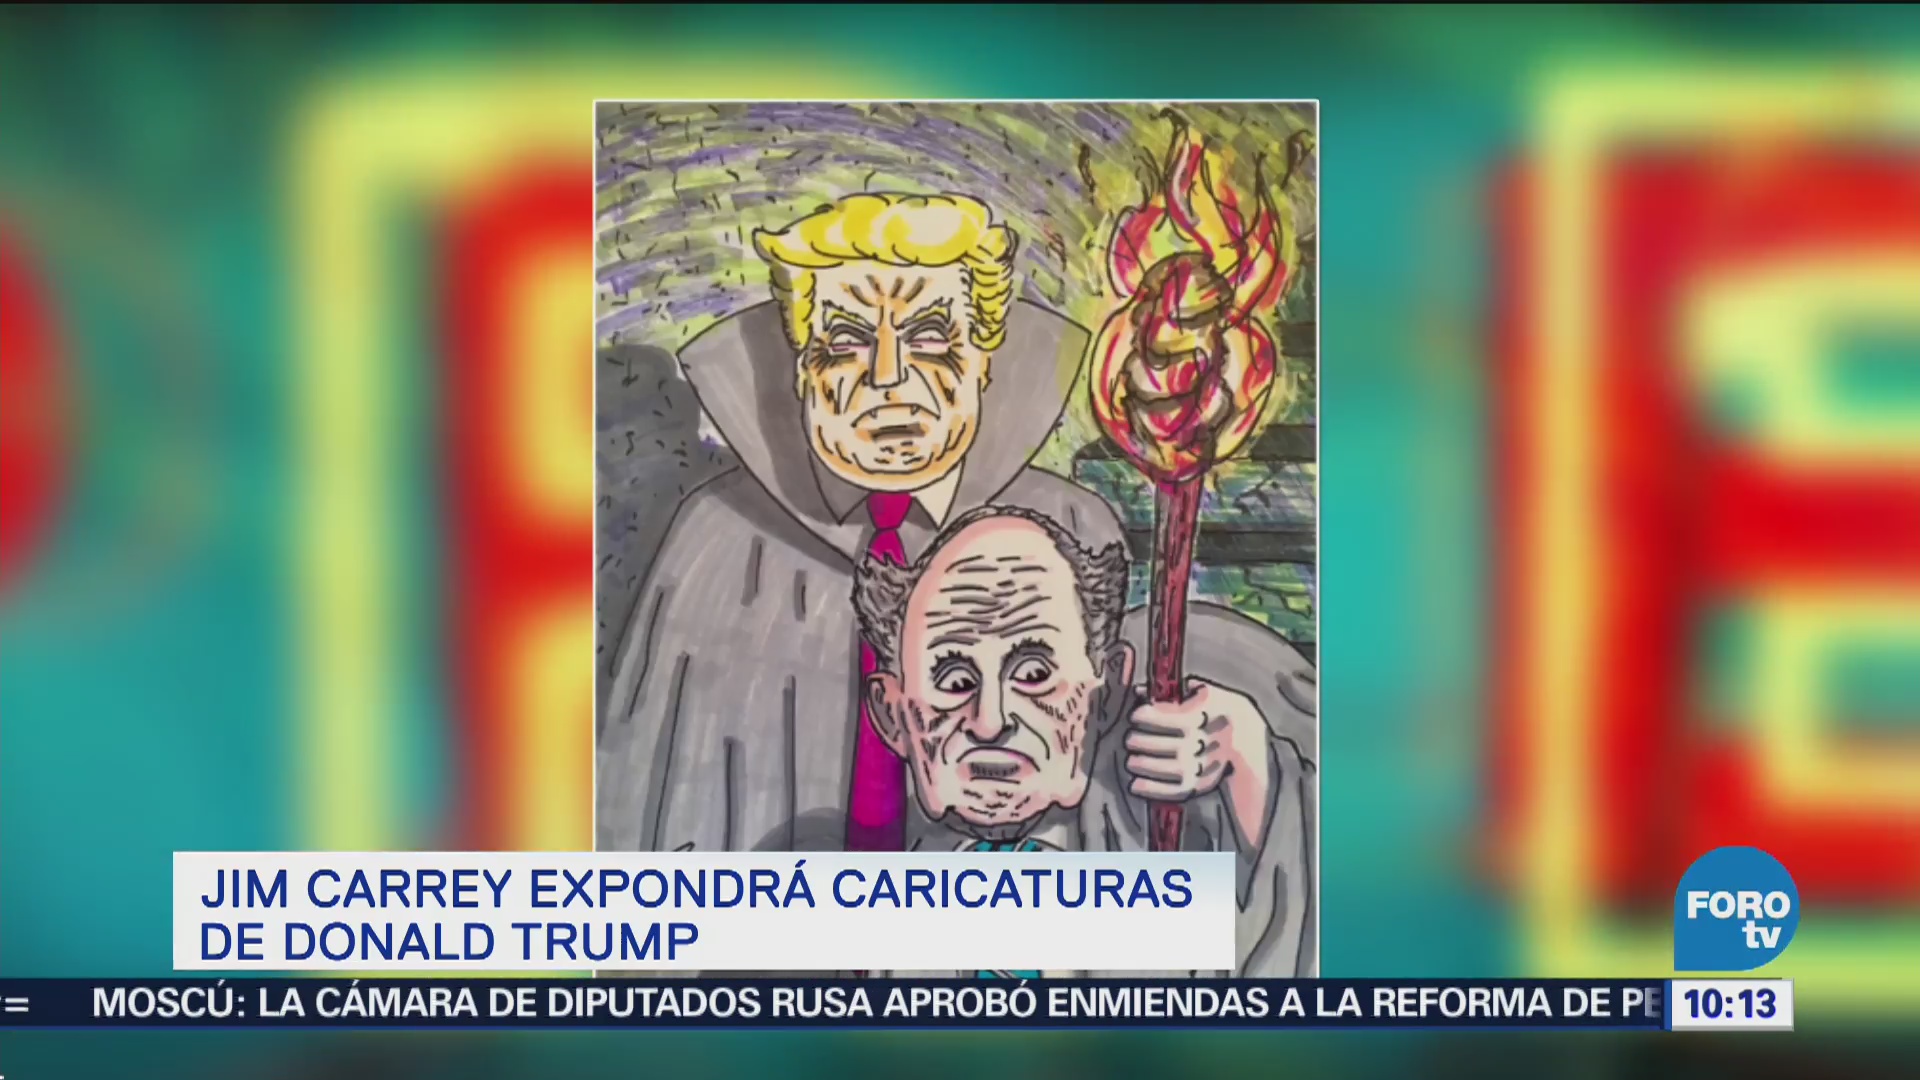 Jim Carrey expondrá caricaturas de Donald Trump